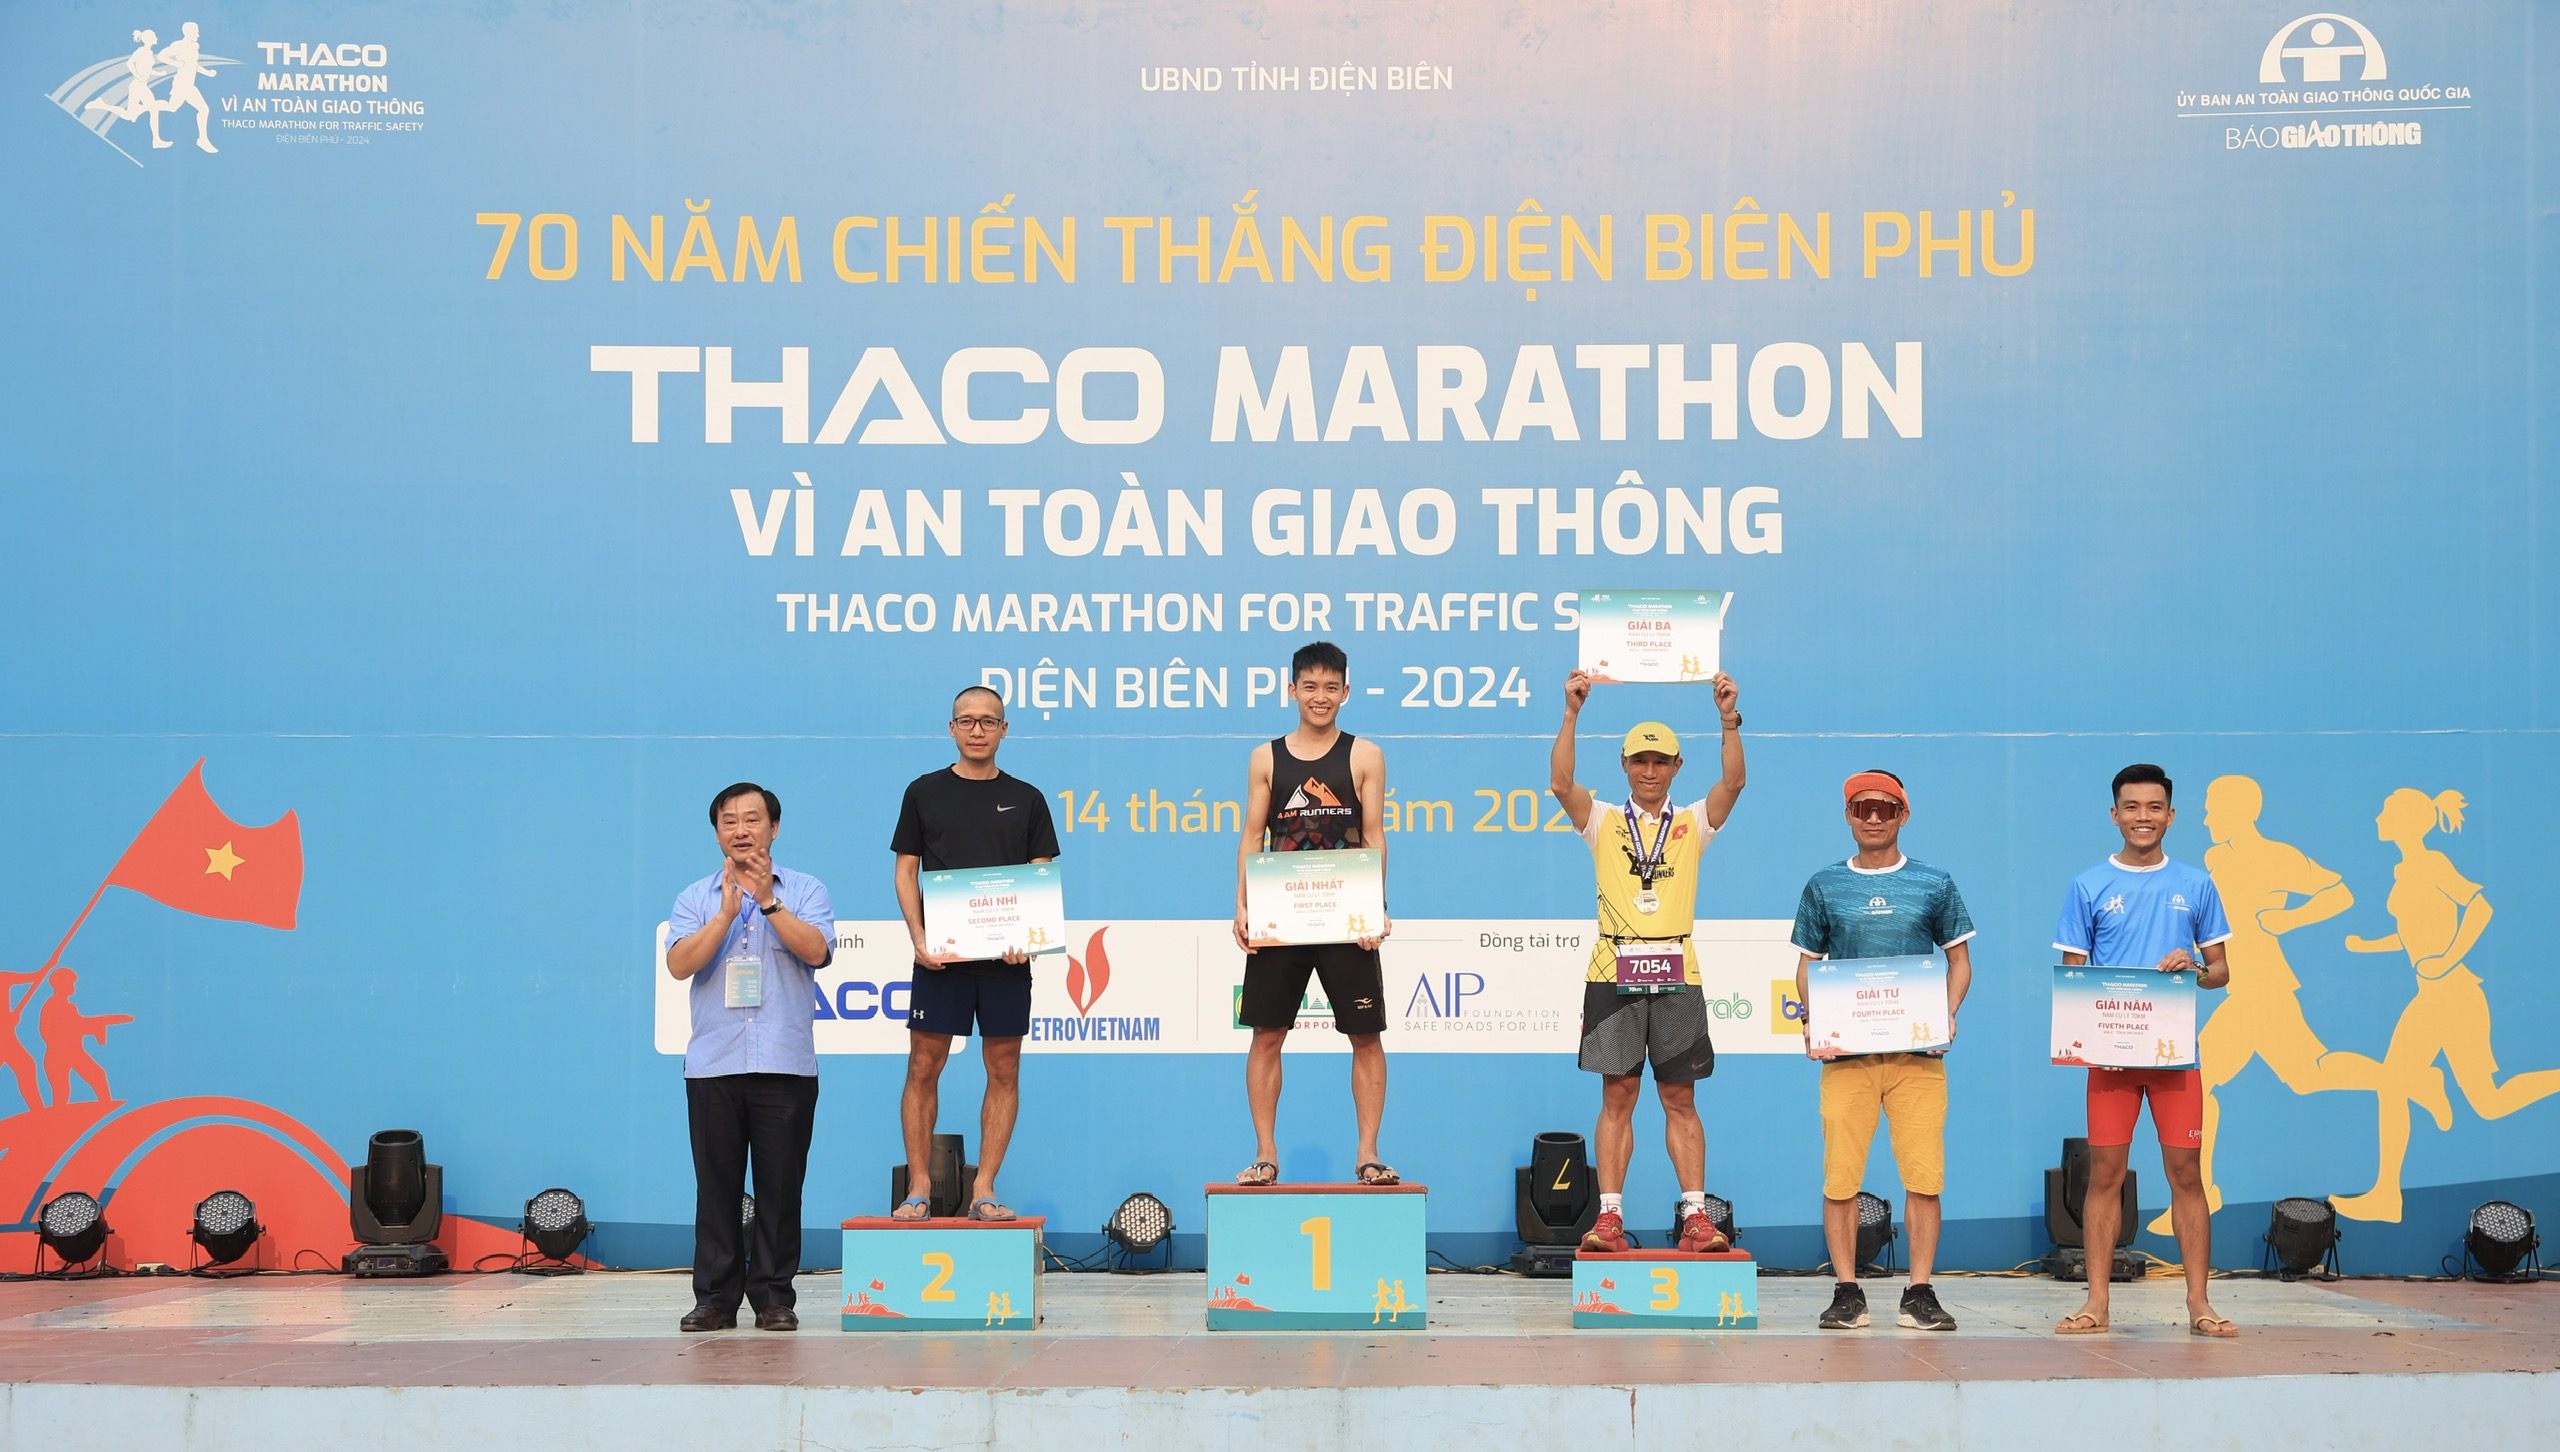 Trực tiếp: Giải THACO Marathon vì ATGT - Điện Biên Phủ 2024 thành công rực rỡ- Ảnh 3.